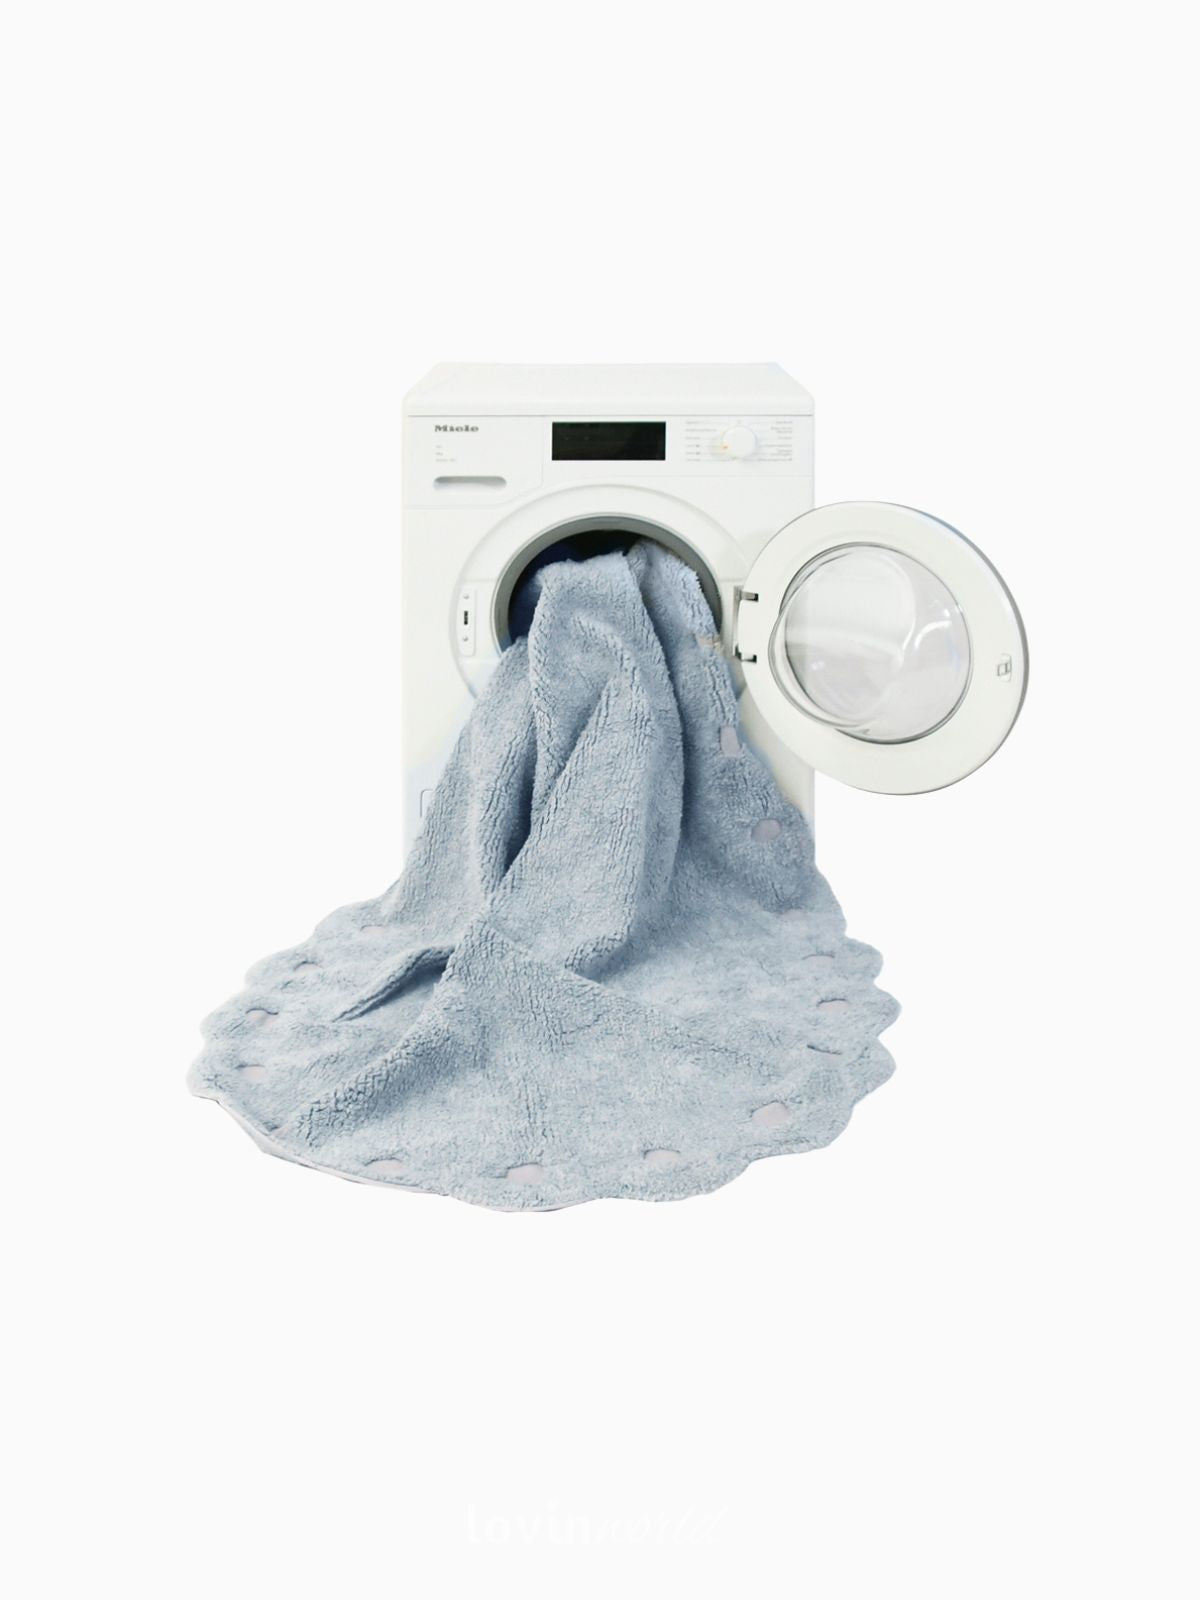 Tappeto in cotone lavabile Picone, in colore Blu Perla-5